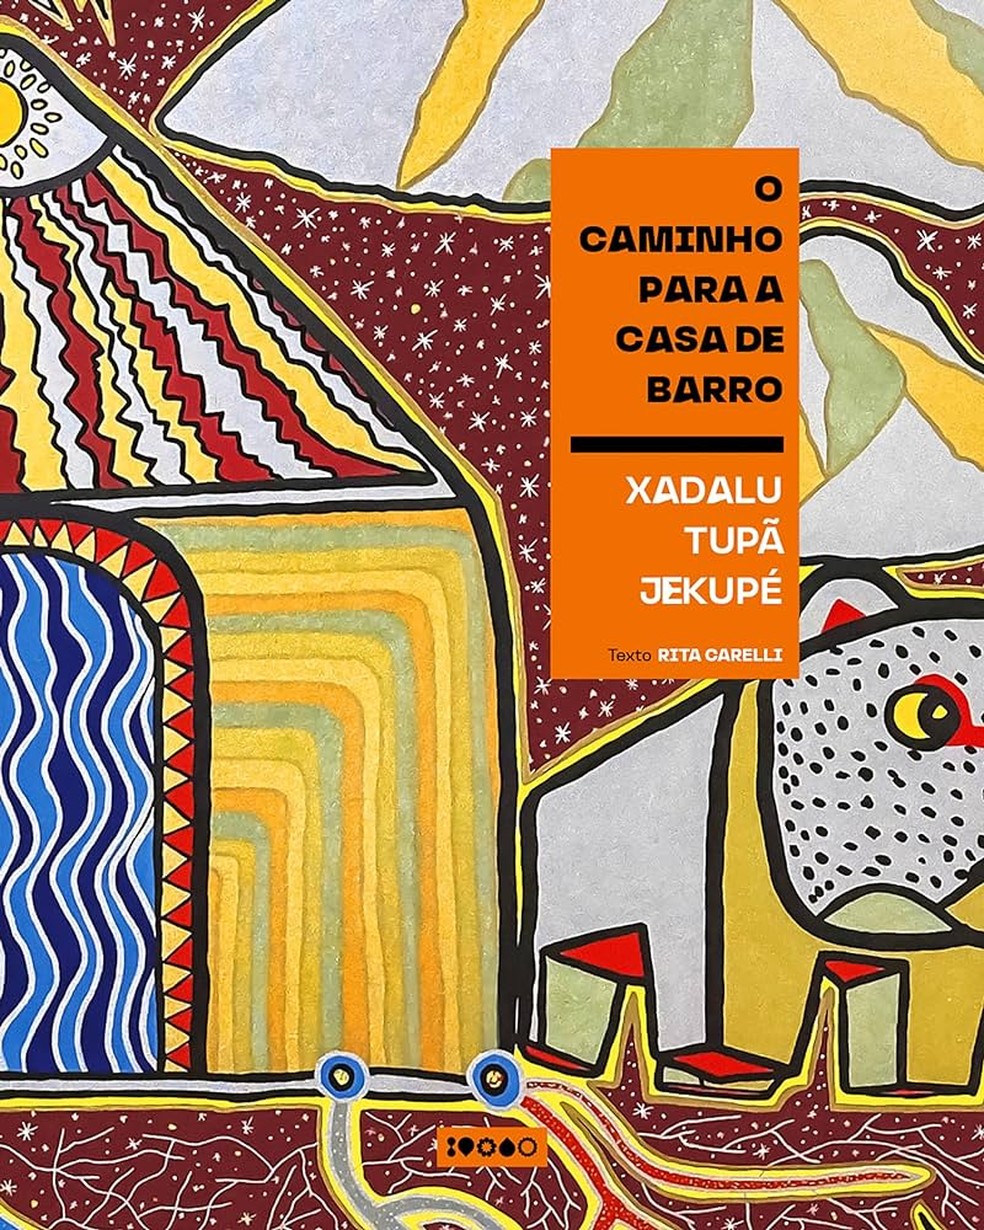 Livro infantil O caminho da casa de barro, de Xadalu Tupã Jekupé e Rita Carelli — Foto: Divulgação